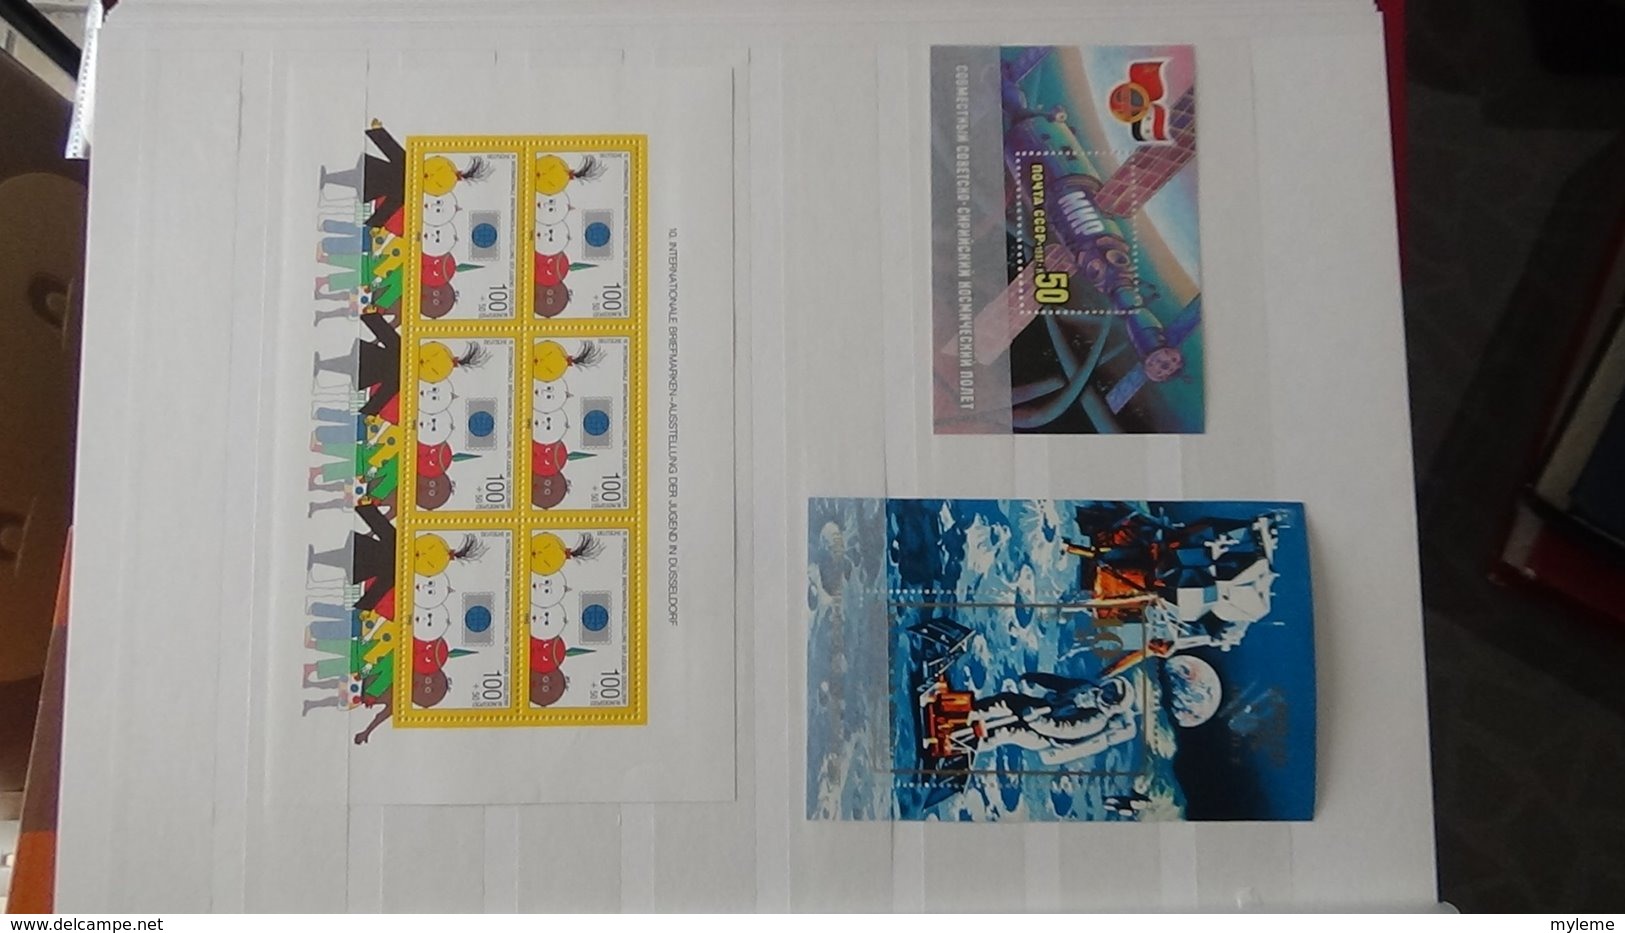 Collection blocs et timbres ** de différents pays dont Maroc, Tunisie, Algérie et autres  Très sympa !!!